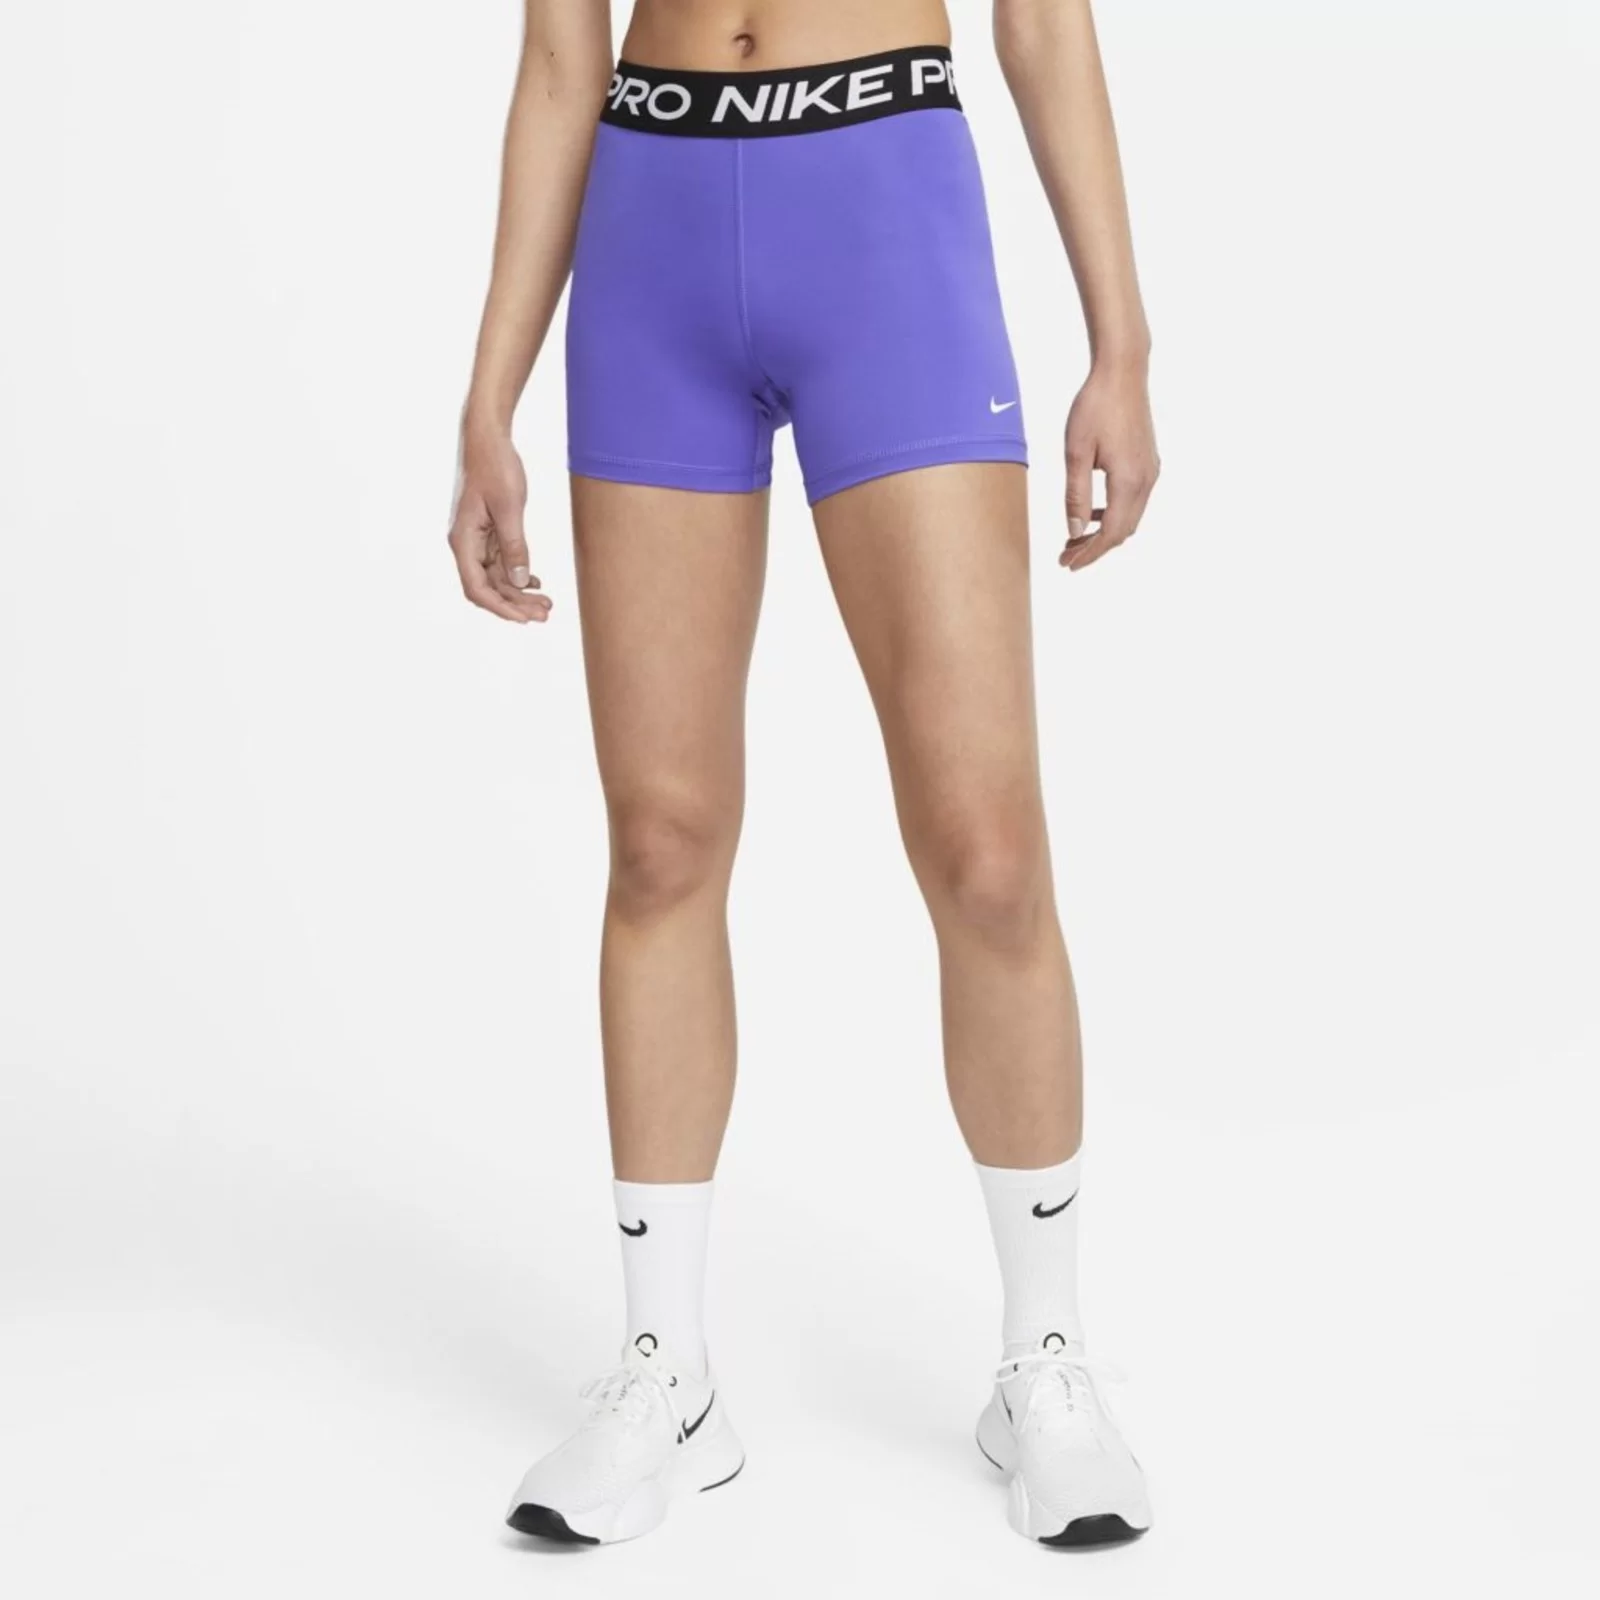 Nike Pro Feminino Na